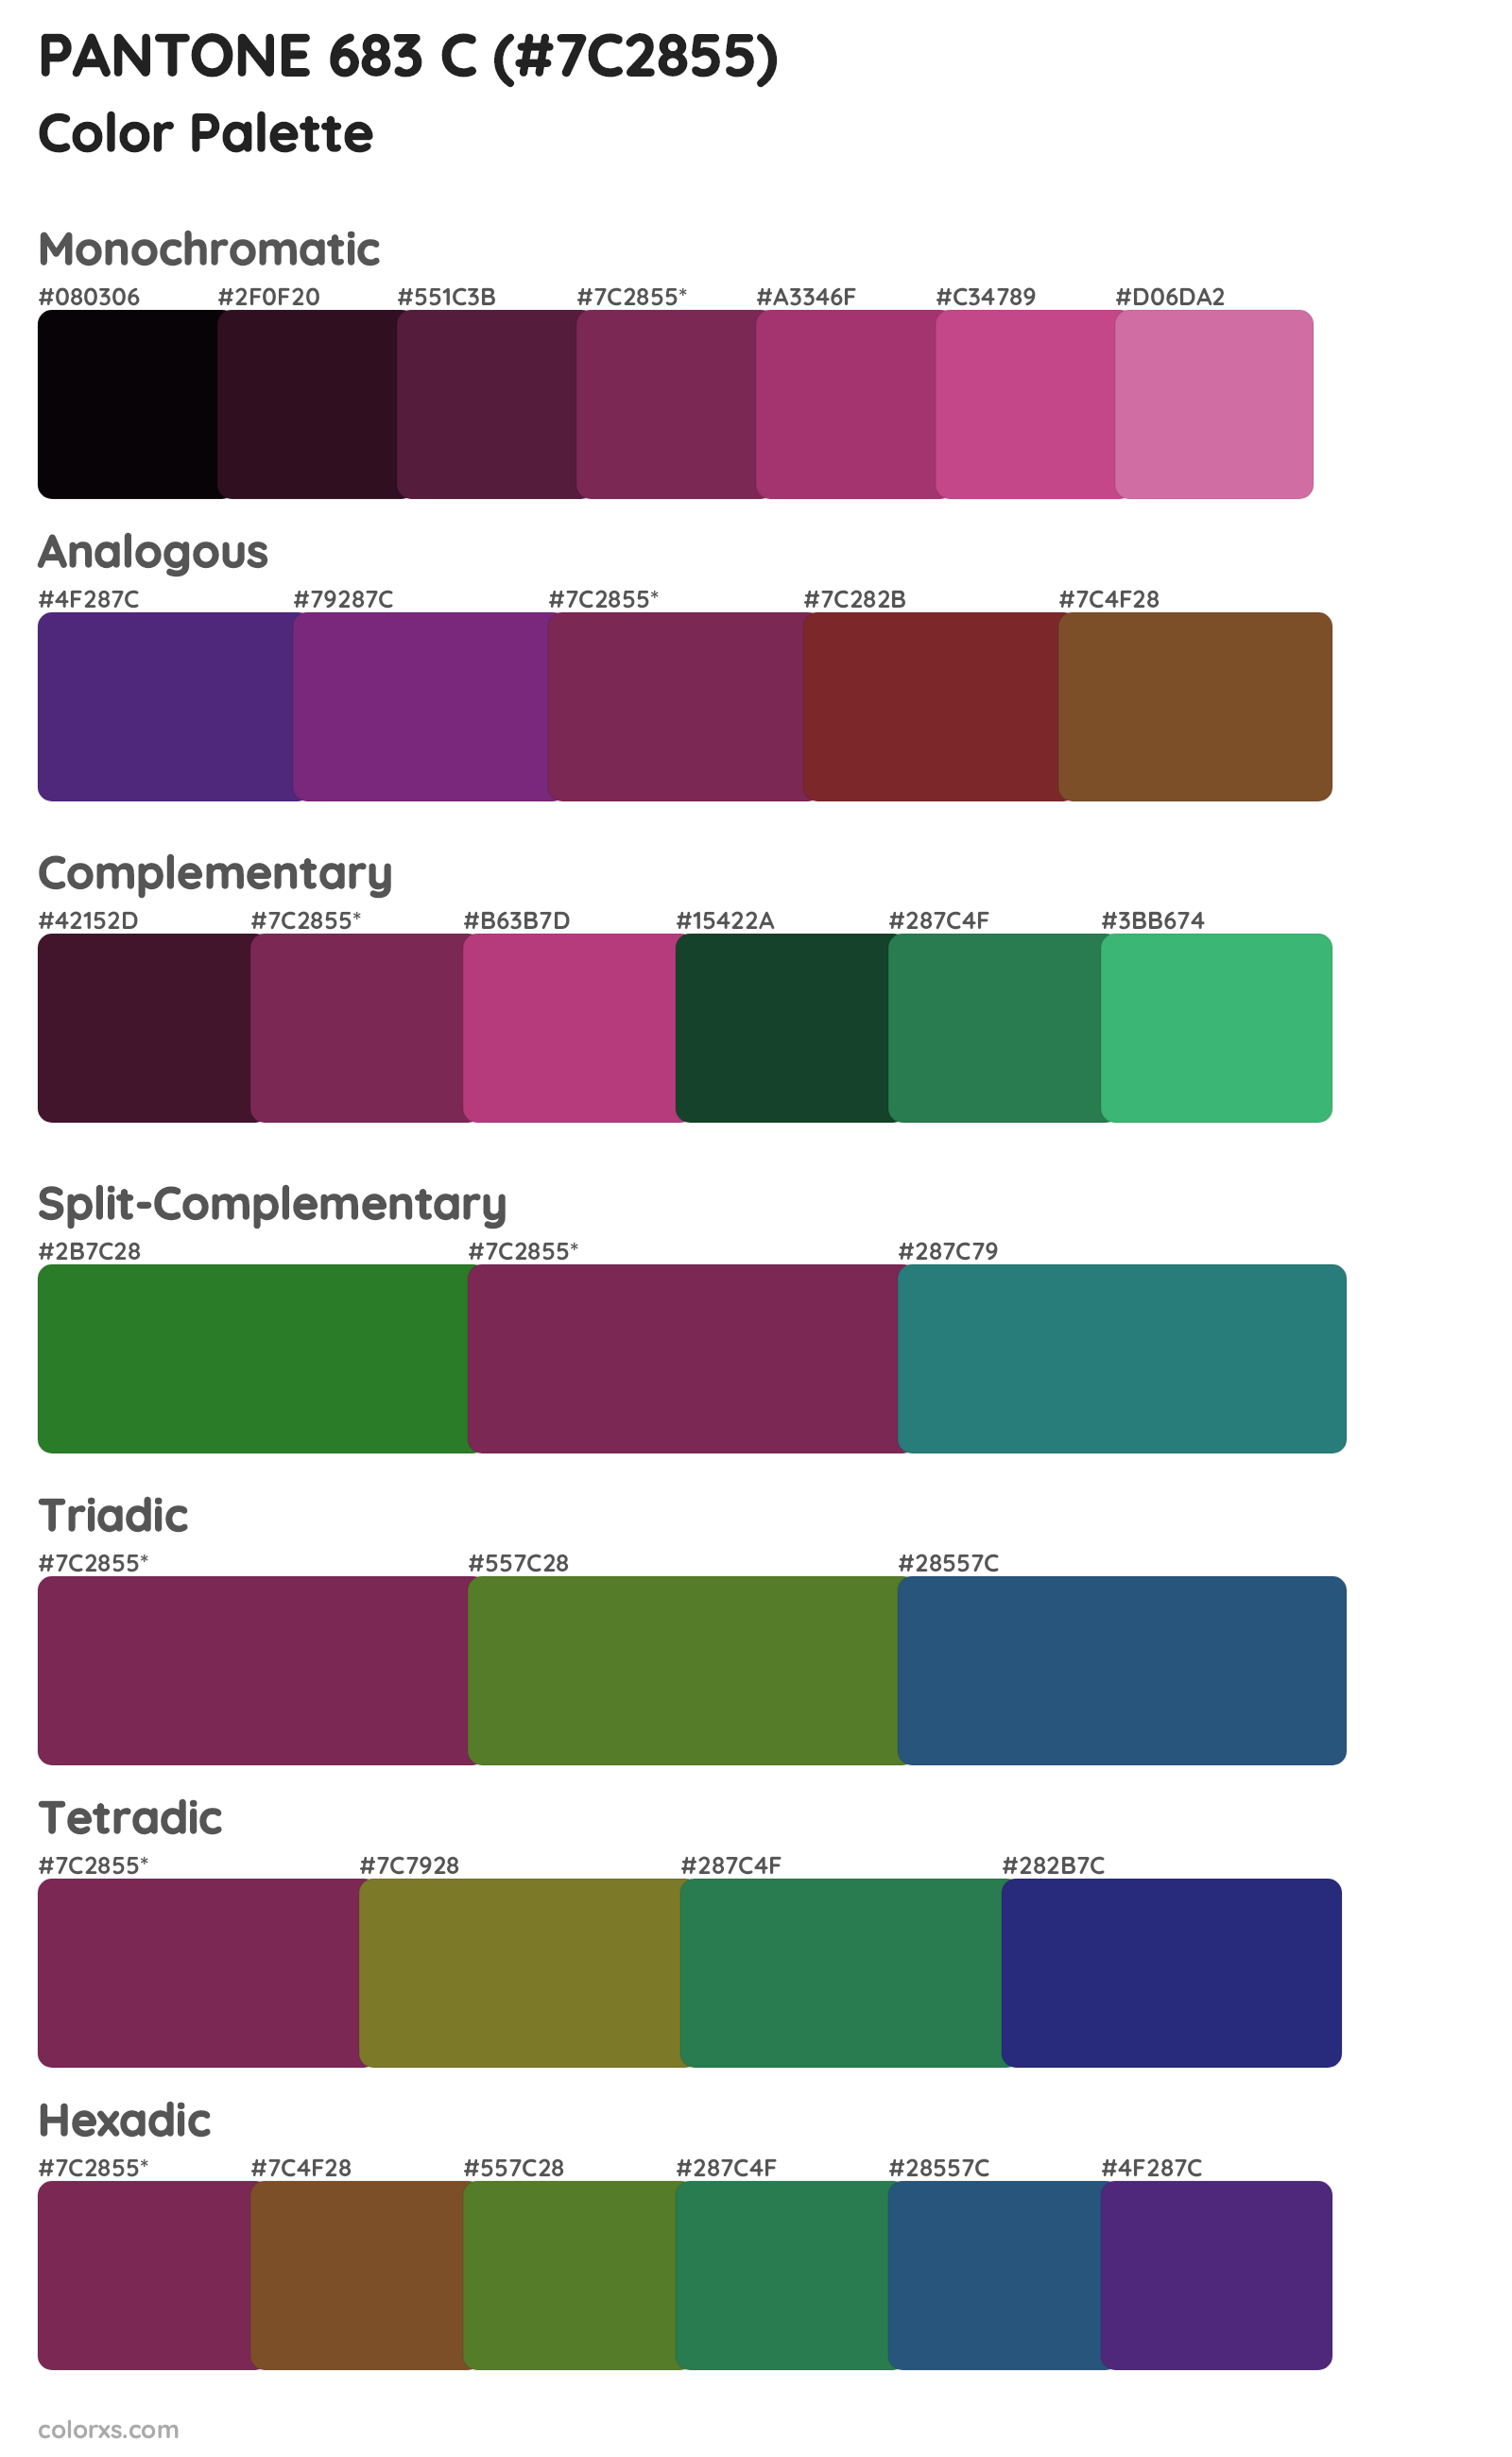 PANTONE 683 C Color Scheme Palettes